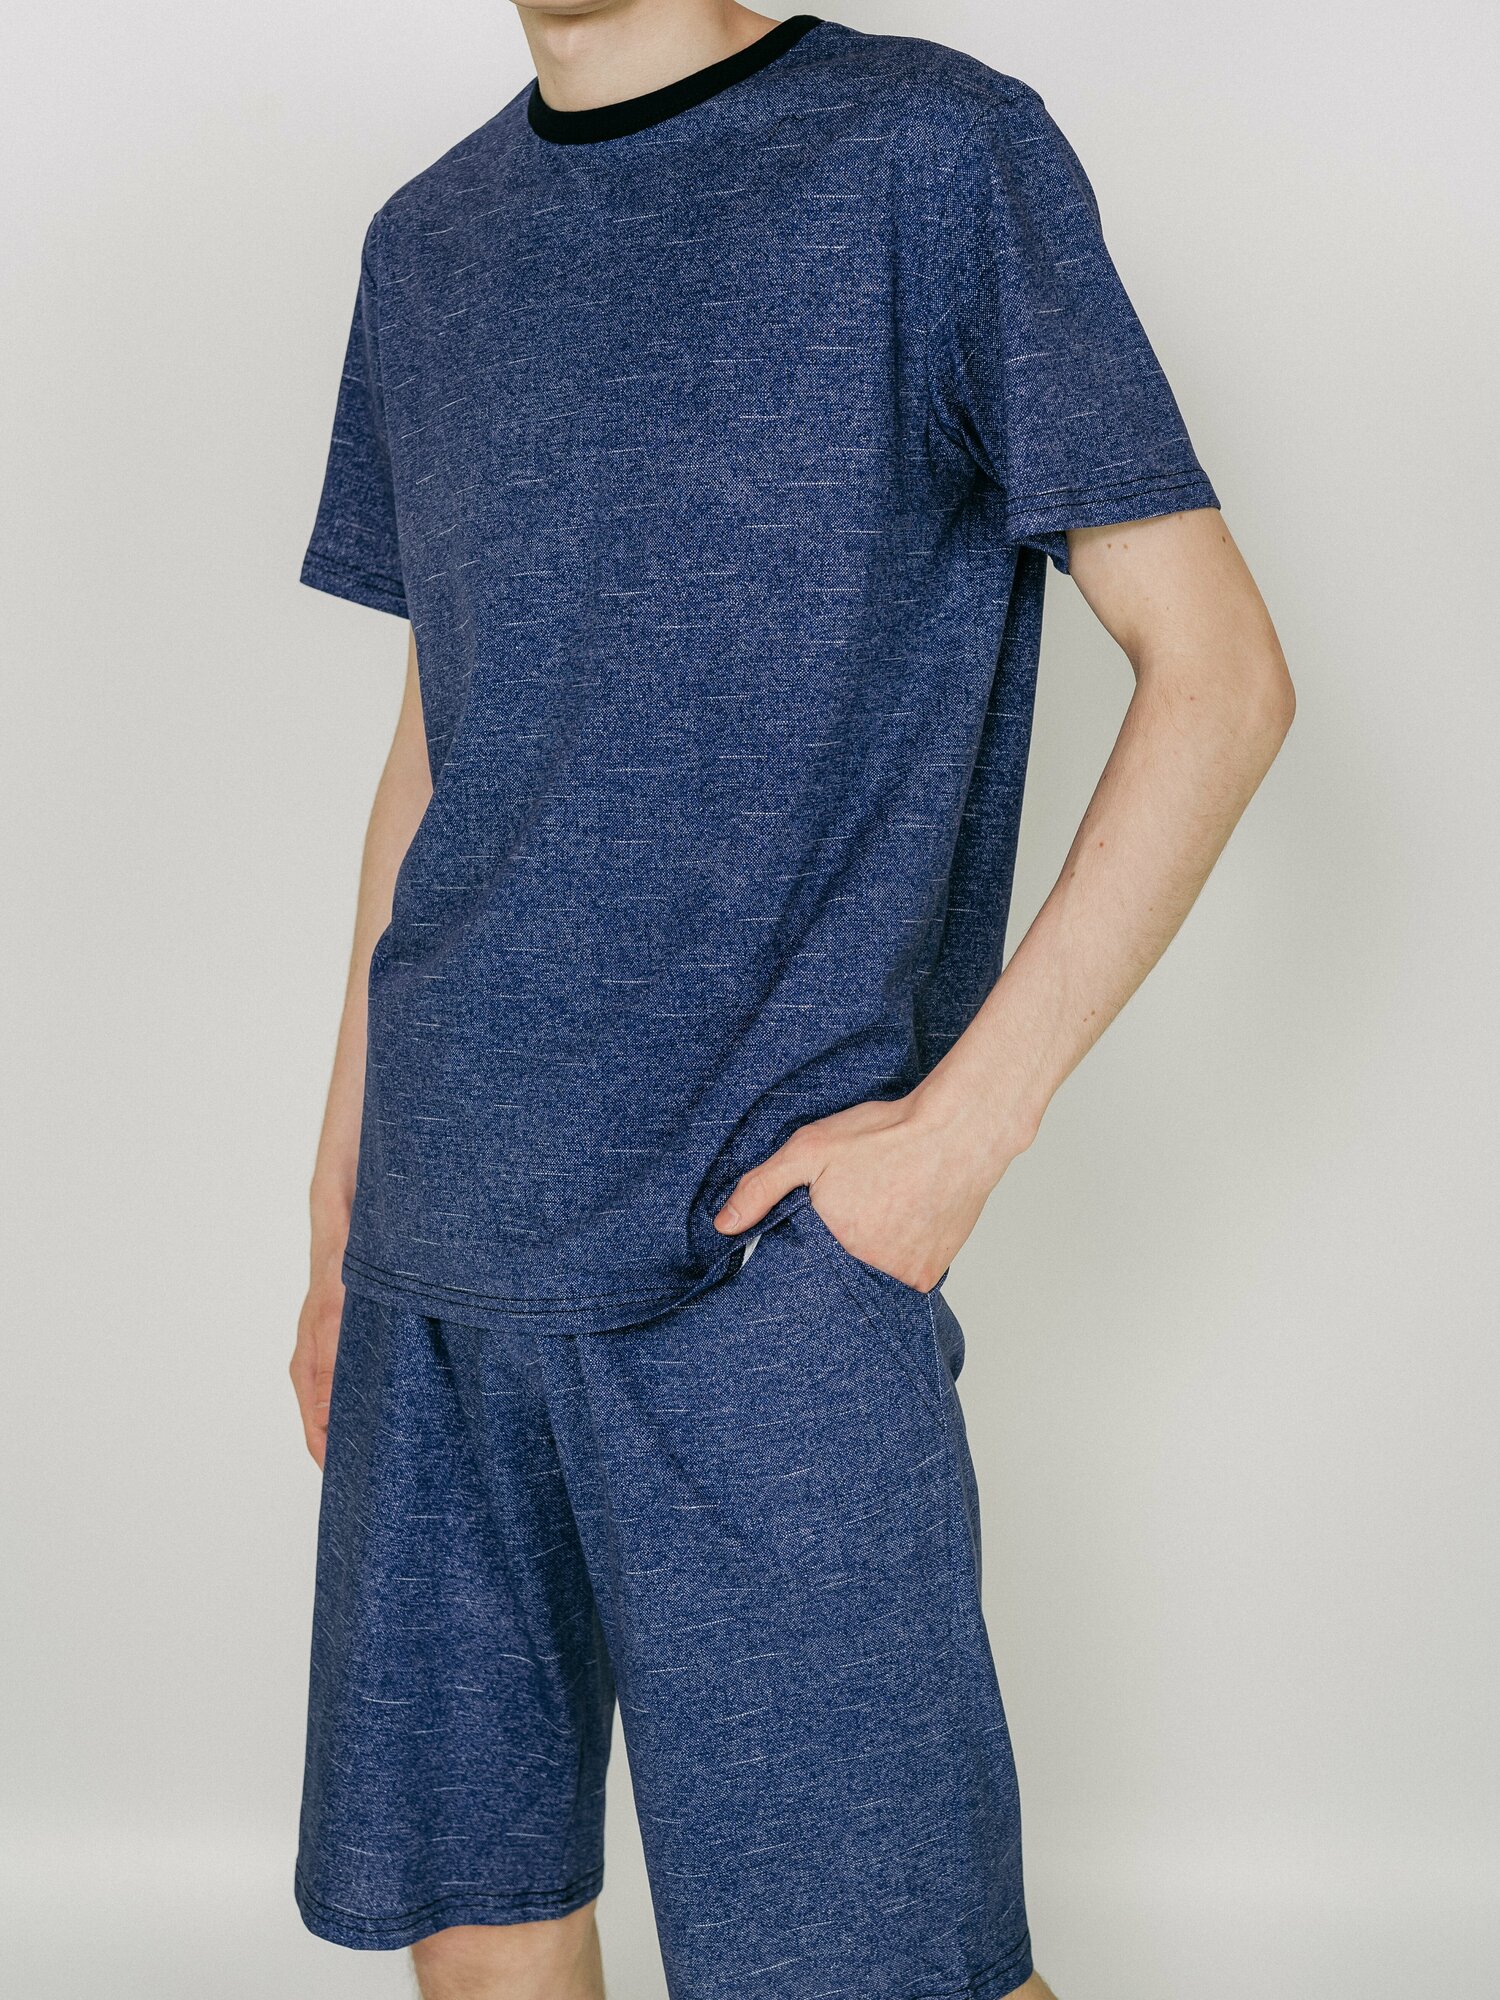 Мужская пижама, мужской пижамный комплект ARISTARHOV, Футболка + Шорты, Синий джинс, размер 54 - фотография № 3